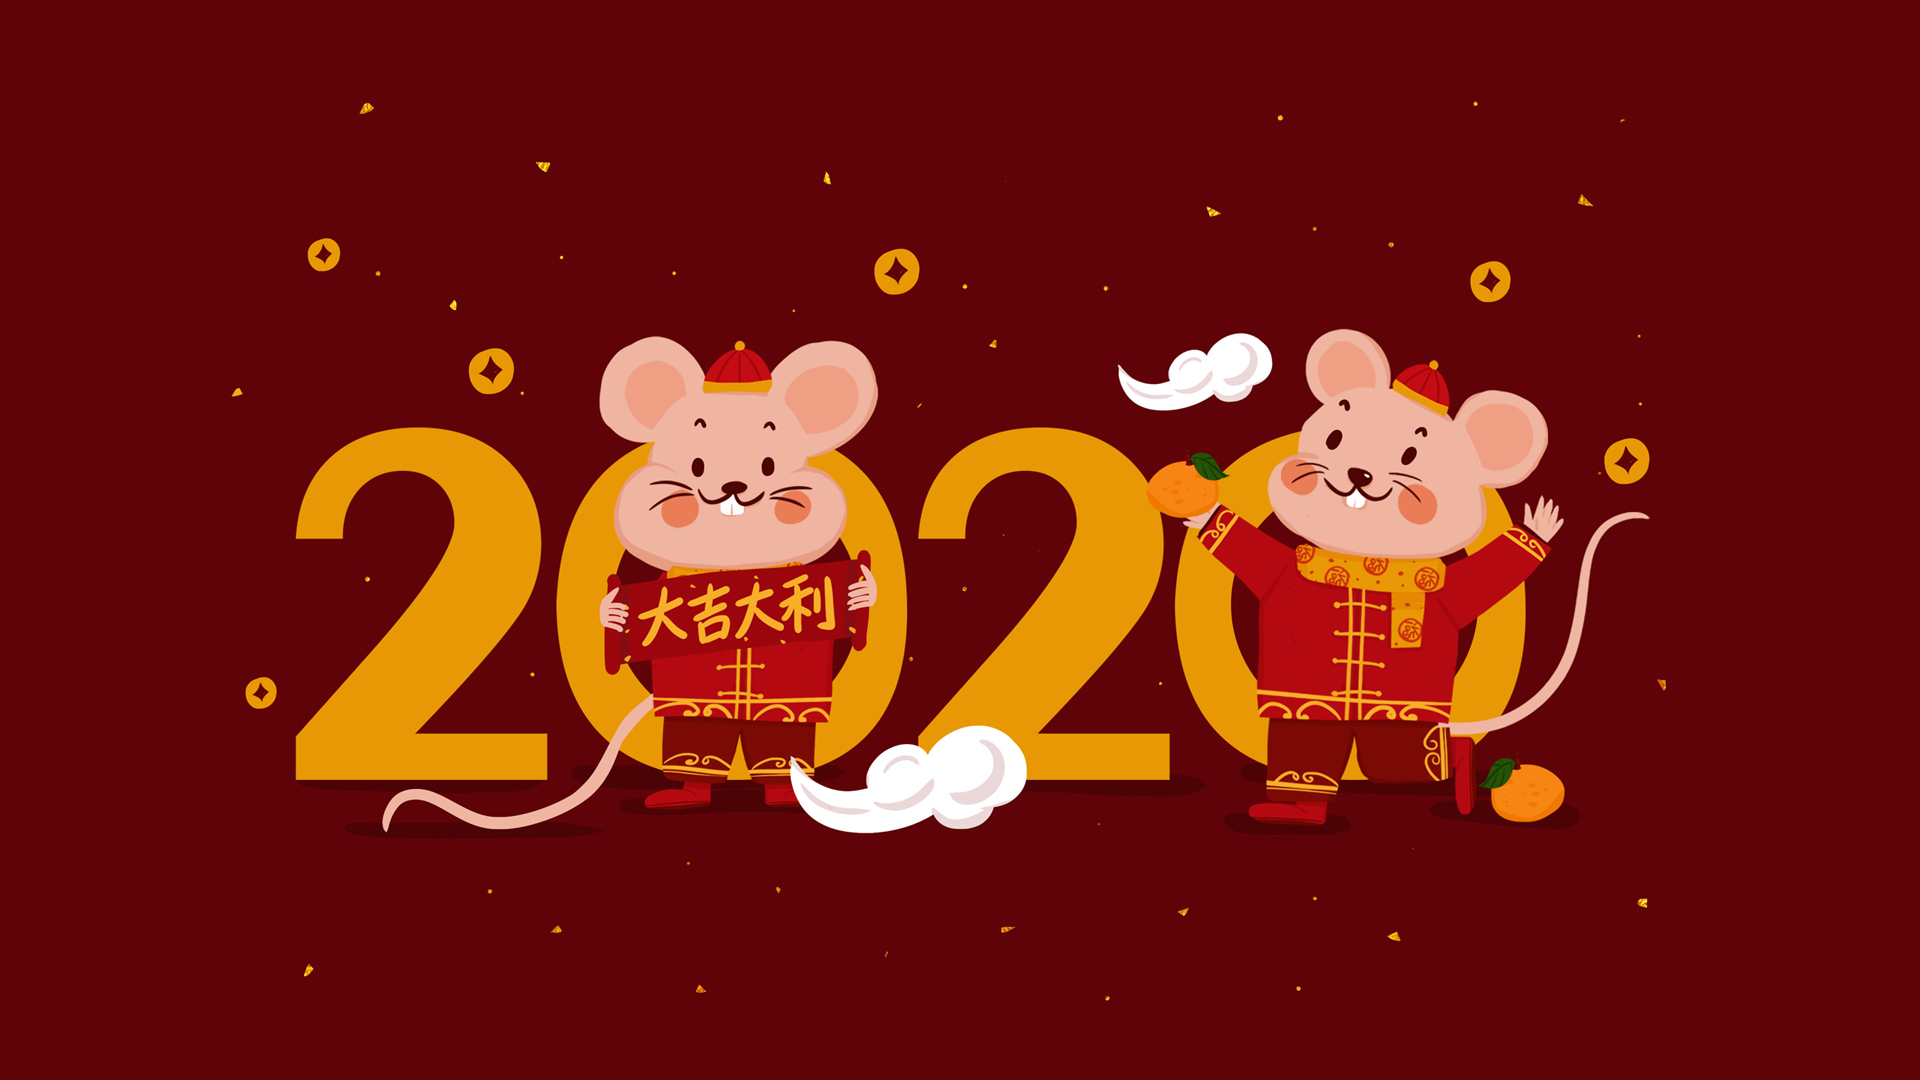 2020年新年壁纸 2020鼠年手机竖屏壁纸 2020年新年壁纸图片大全